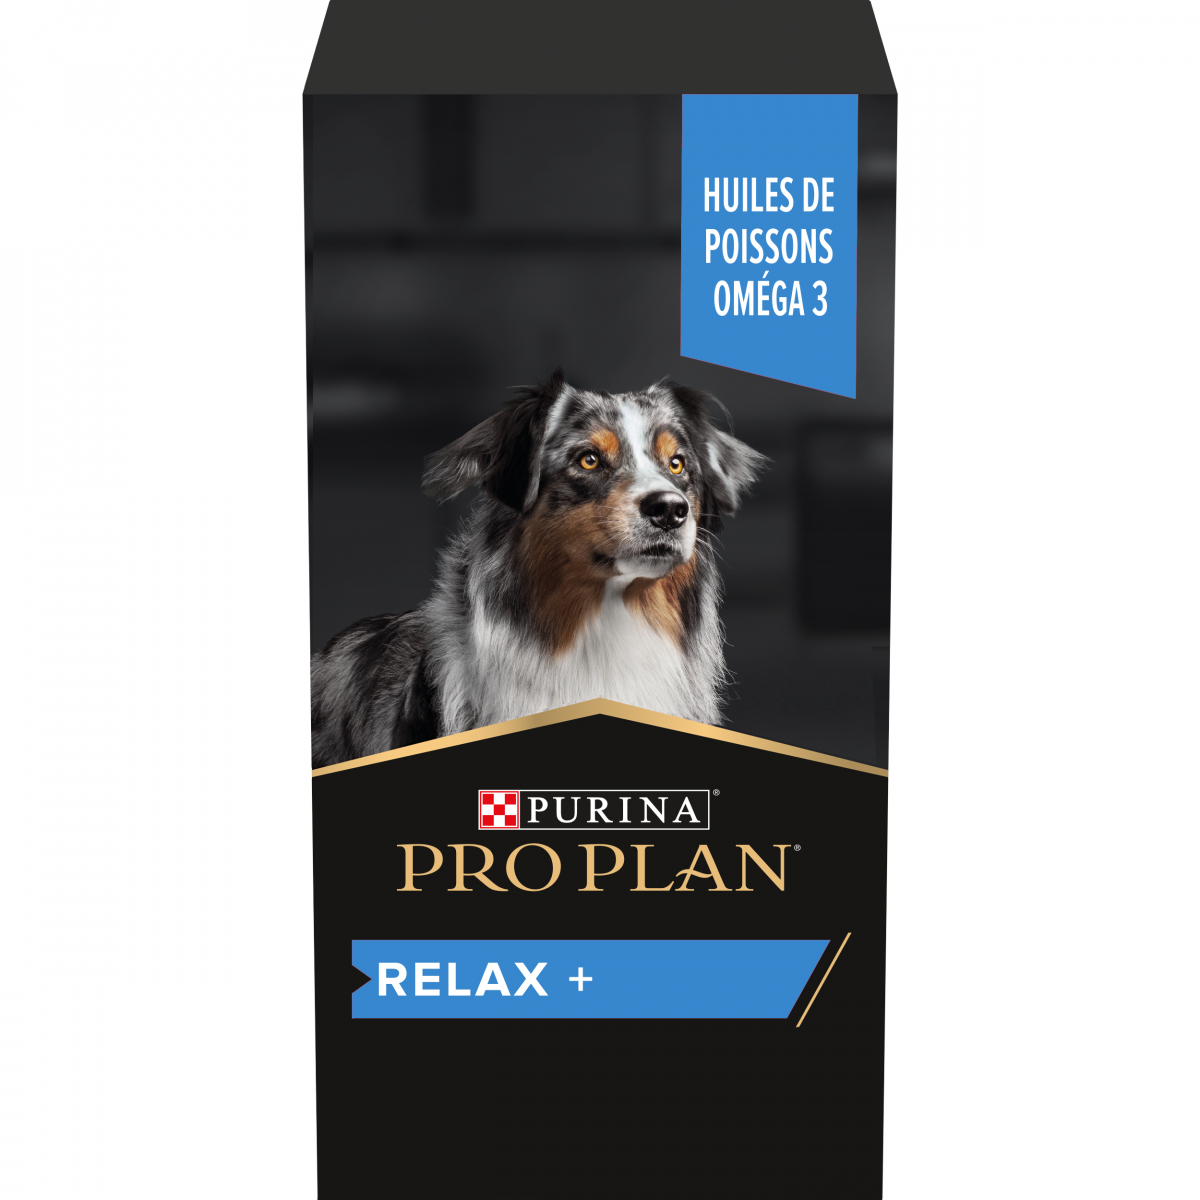 Purina Pro Plan Relax+ aliment complémentaire huile pour chien